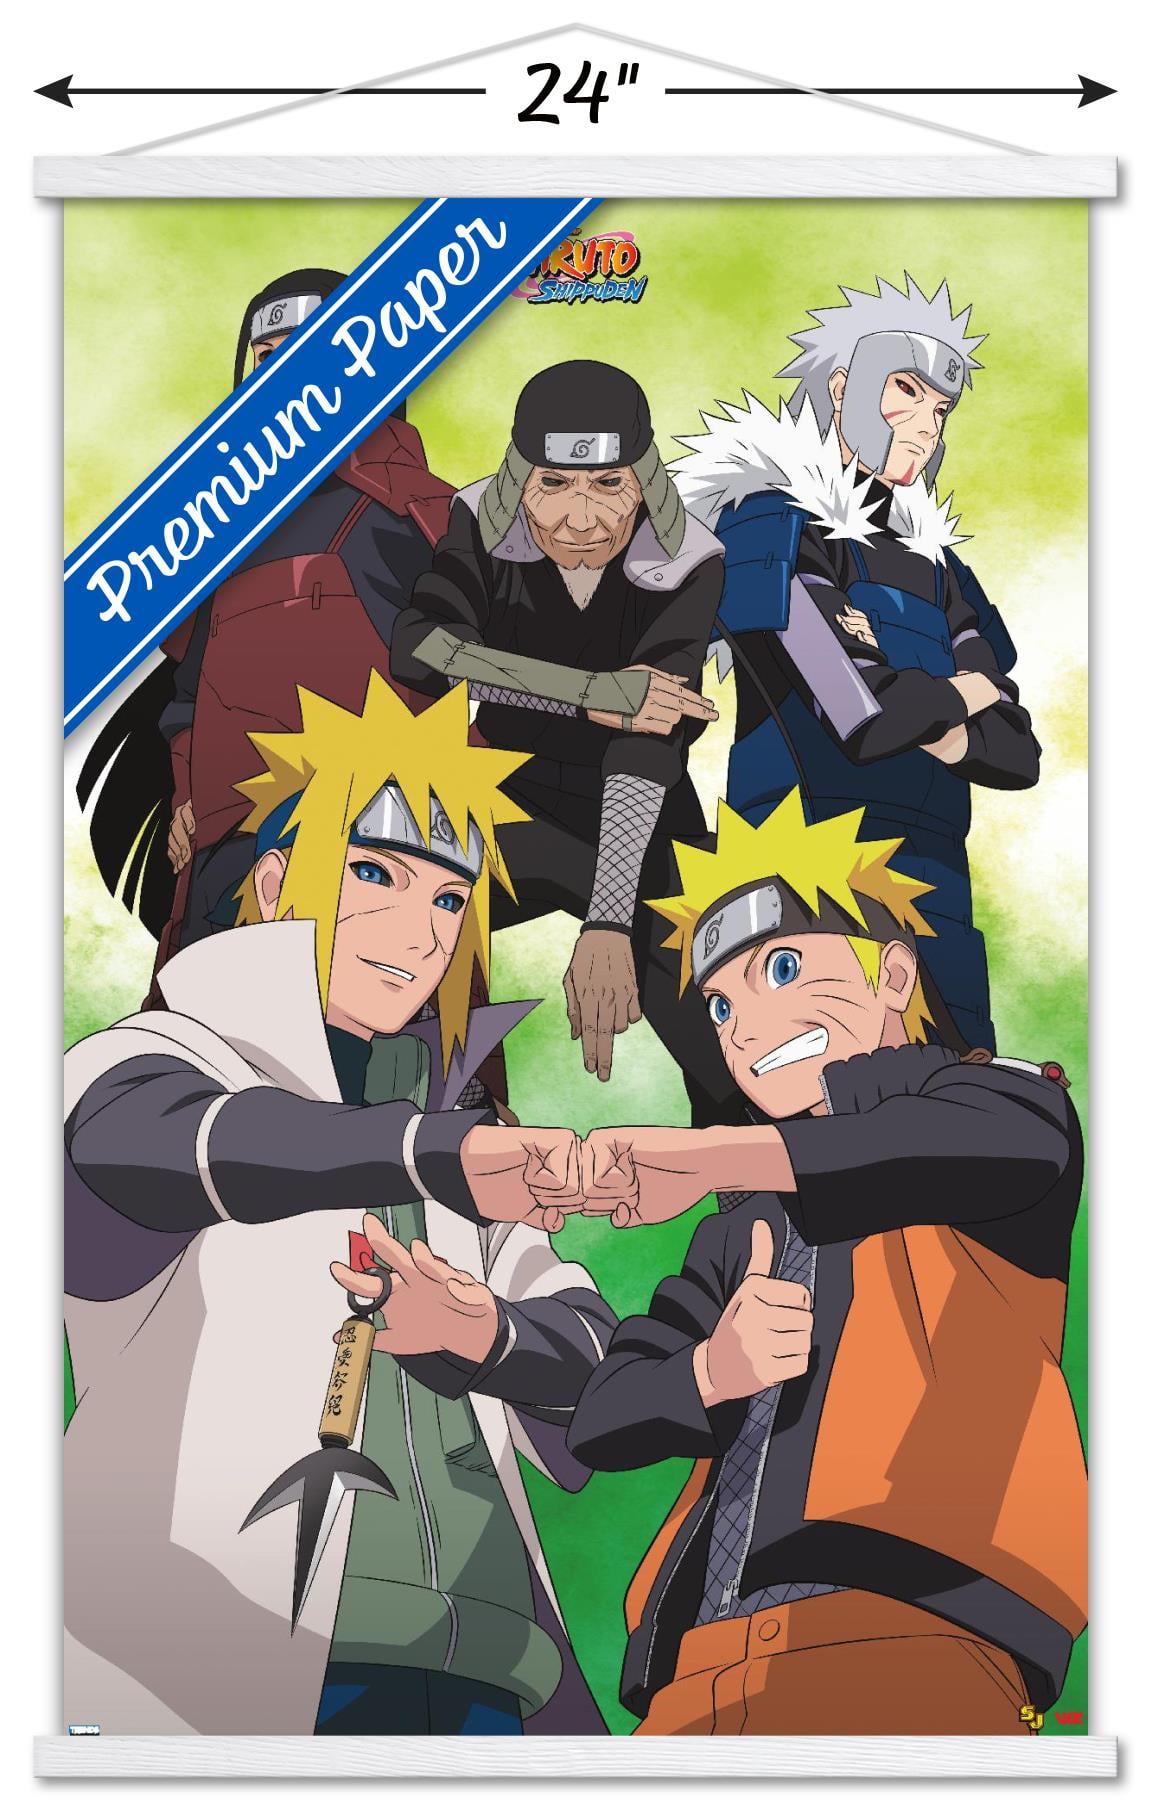 Times Comic Naruto Hokage Poster, Naruto Uzumaki Hokage Anime Poster, Naruto Wall Poster